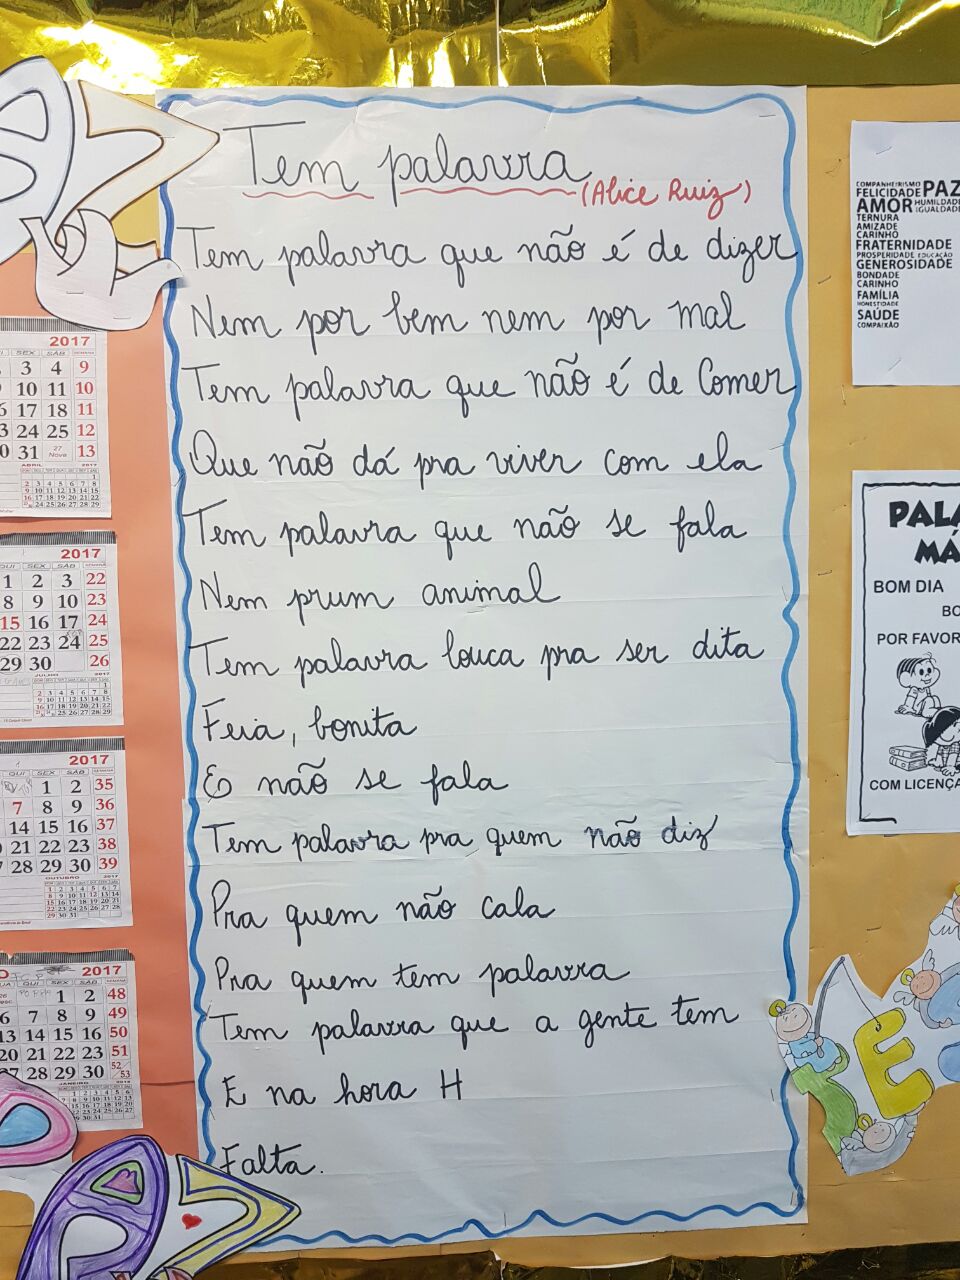 Dic2me: a aplicação portuguesa que ajuda nos ditados da escola